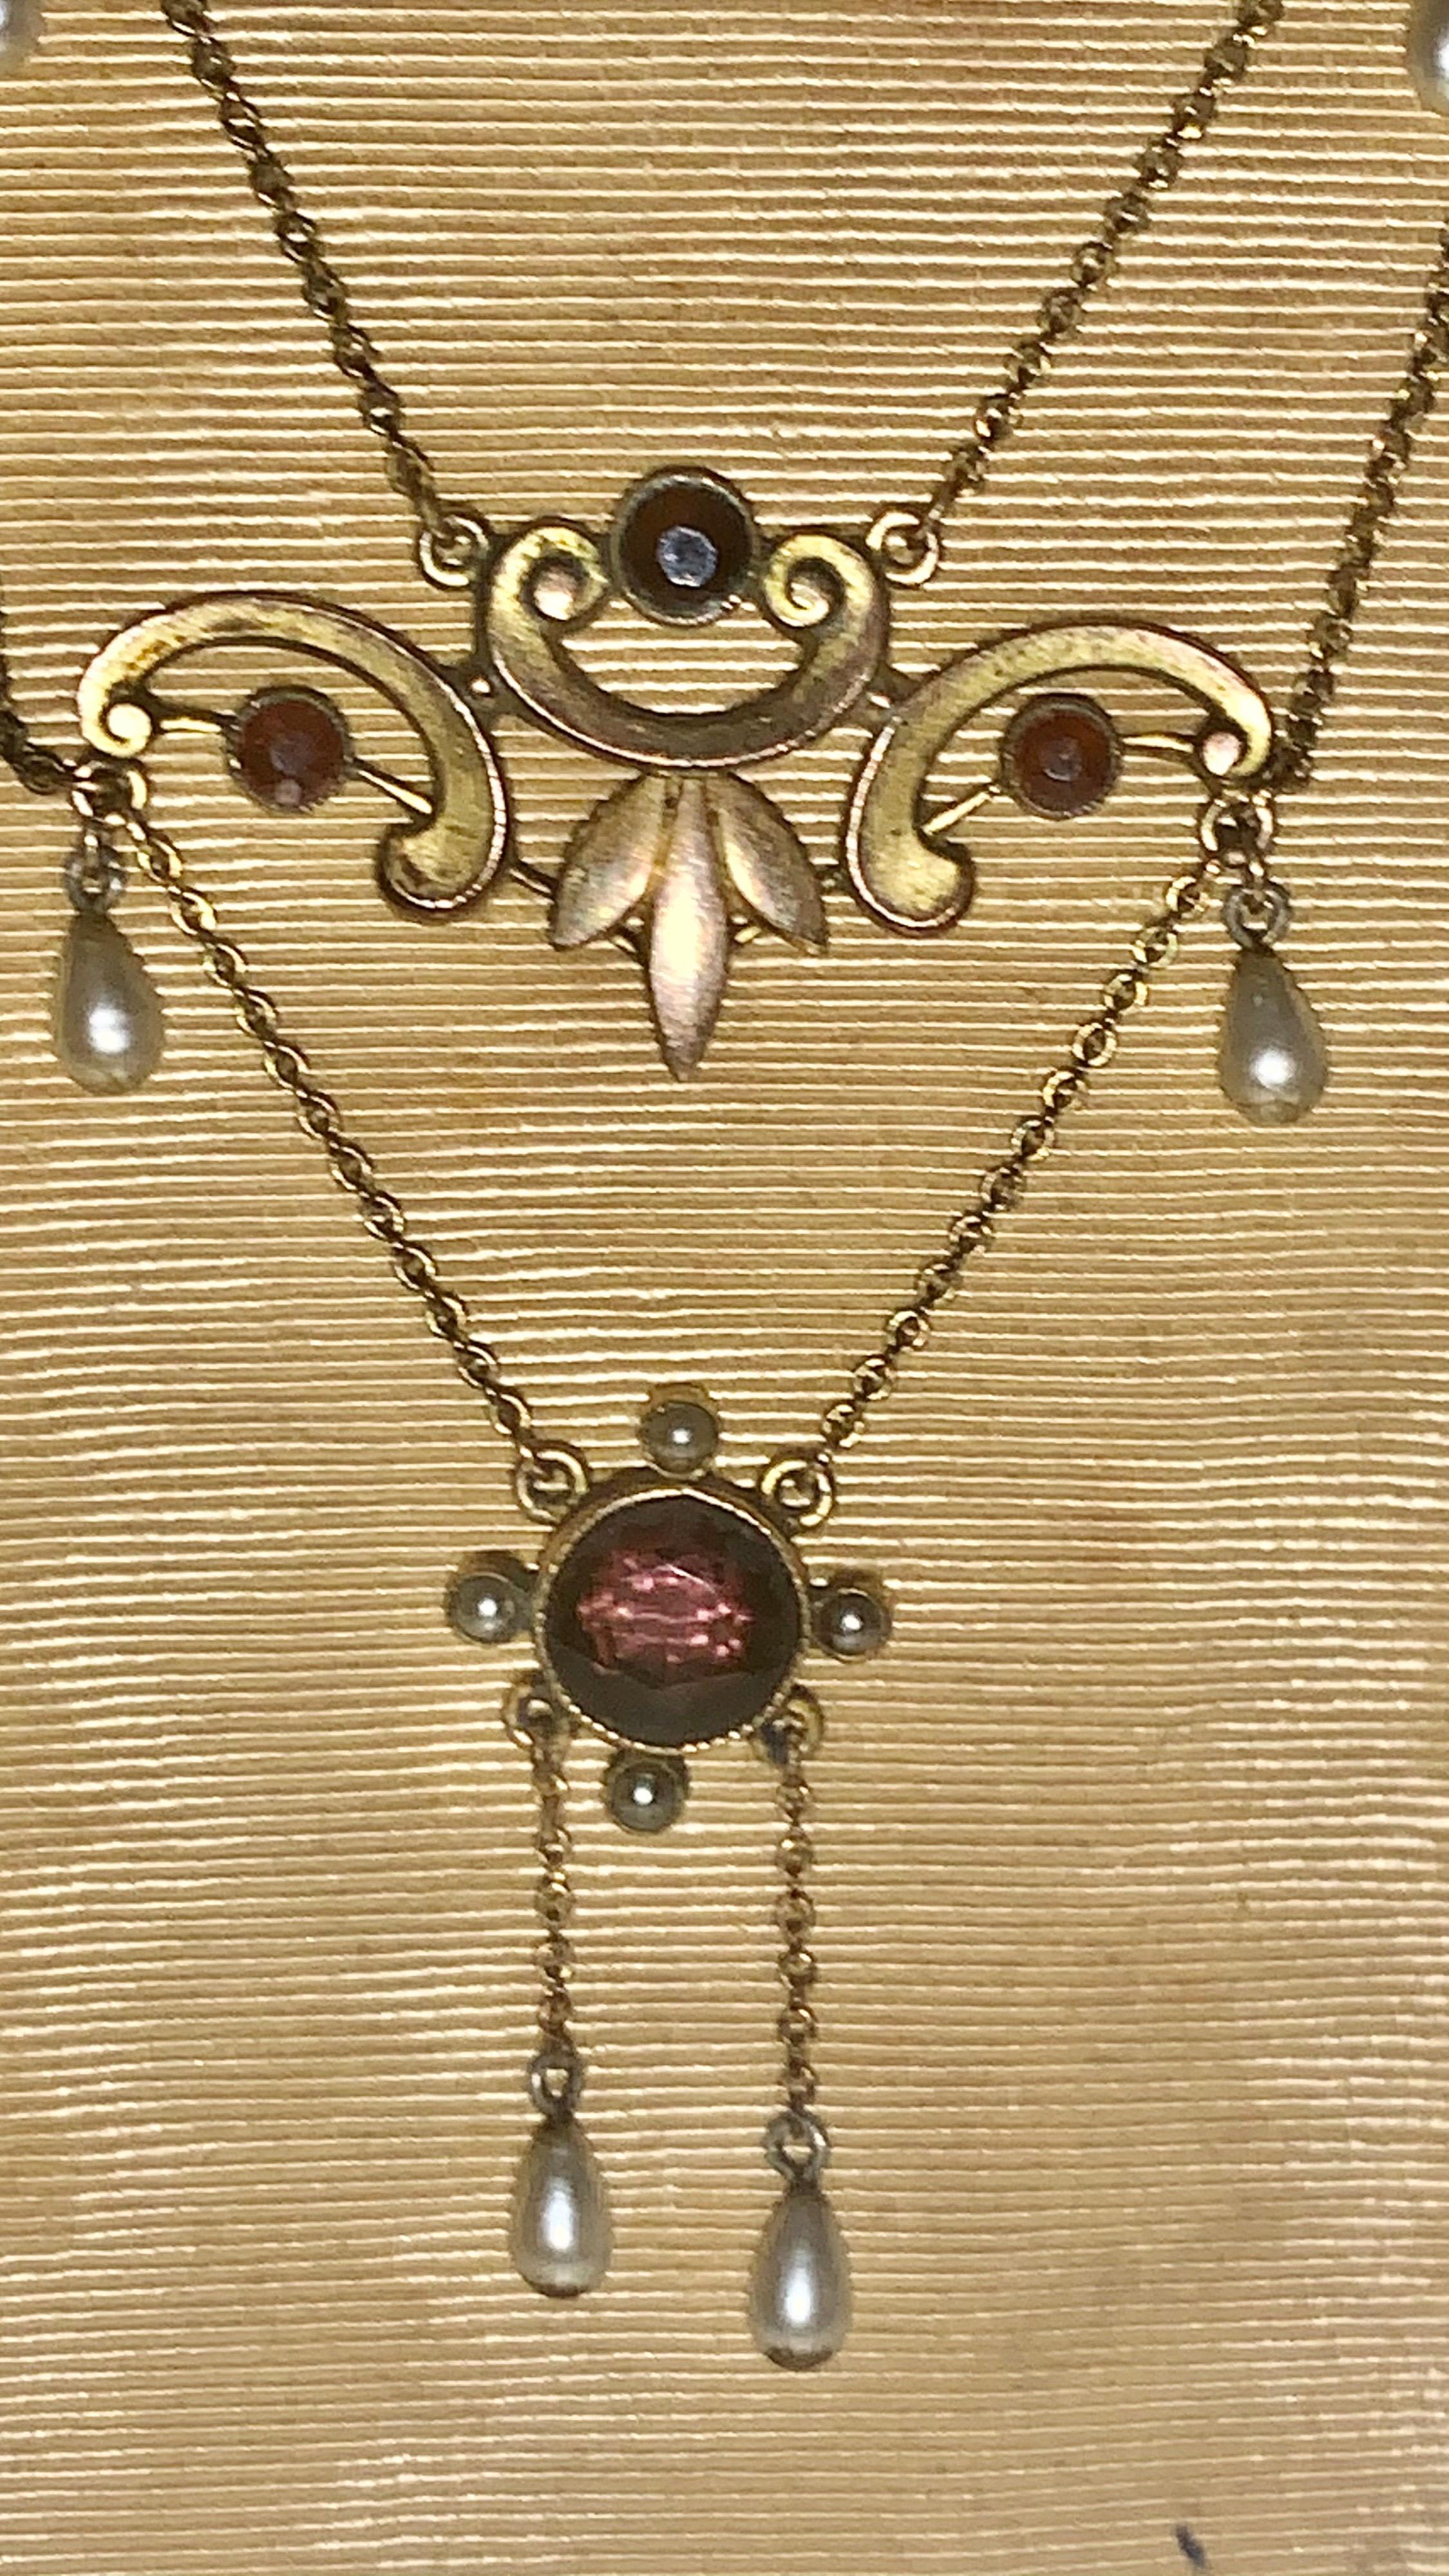 Diese prächtige viktorianische Amethyst- und Perlenkette aus Gold wurde um 1880 in England handgefertigt. Ein sehr interessantes Design mit sechs beweglichen Perlenanhängern. Ein großer Amethyst in der Mitte wiegt 1,6 Karat, die anderen Steine